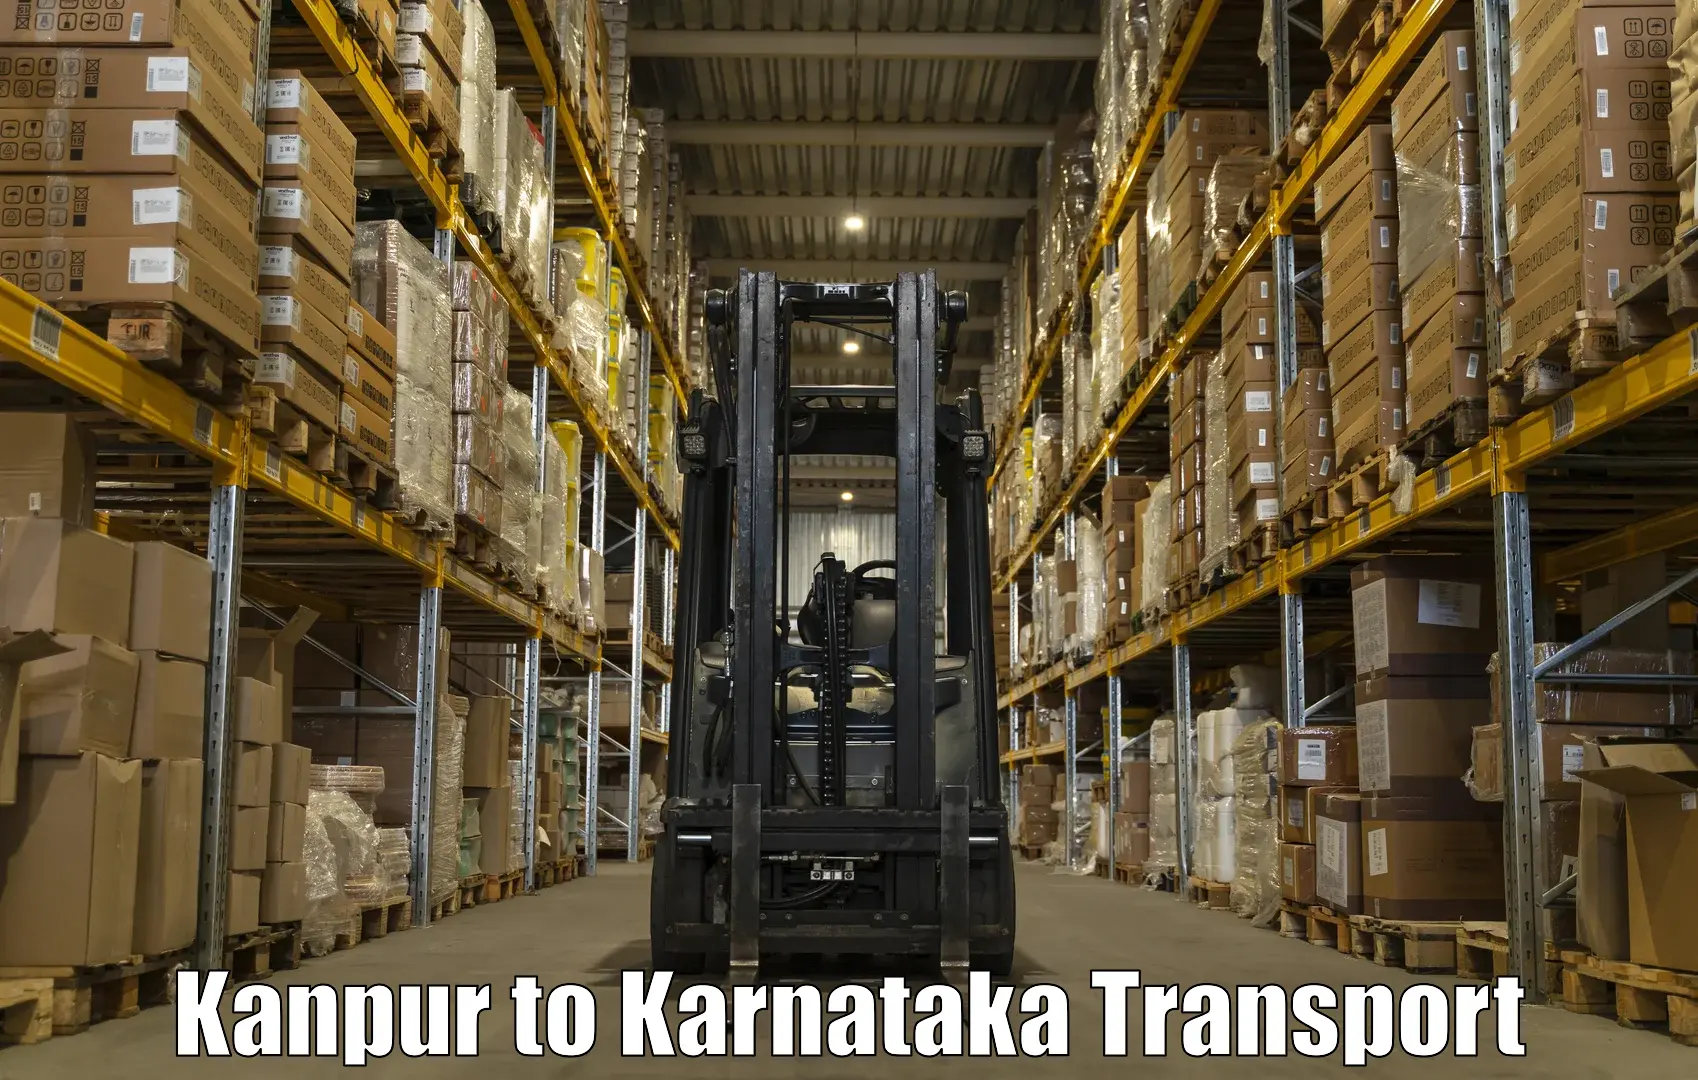 Nationwide transport services Kanpur to Karnataka